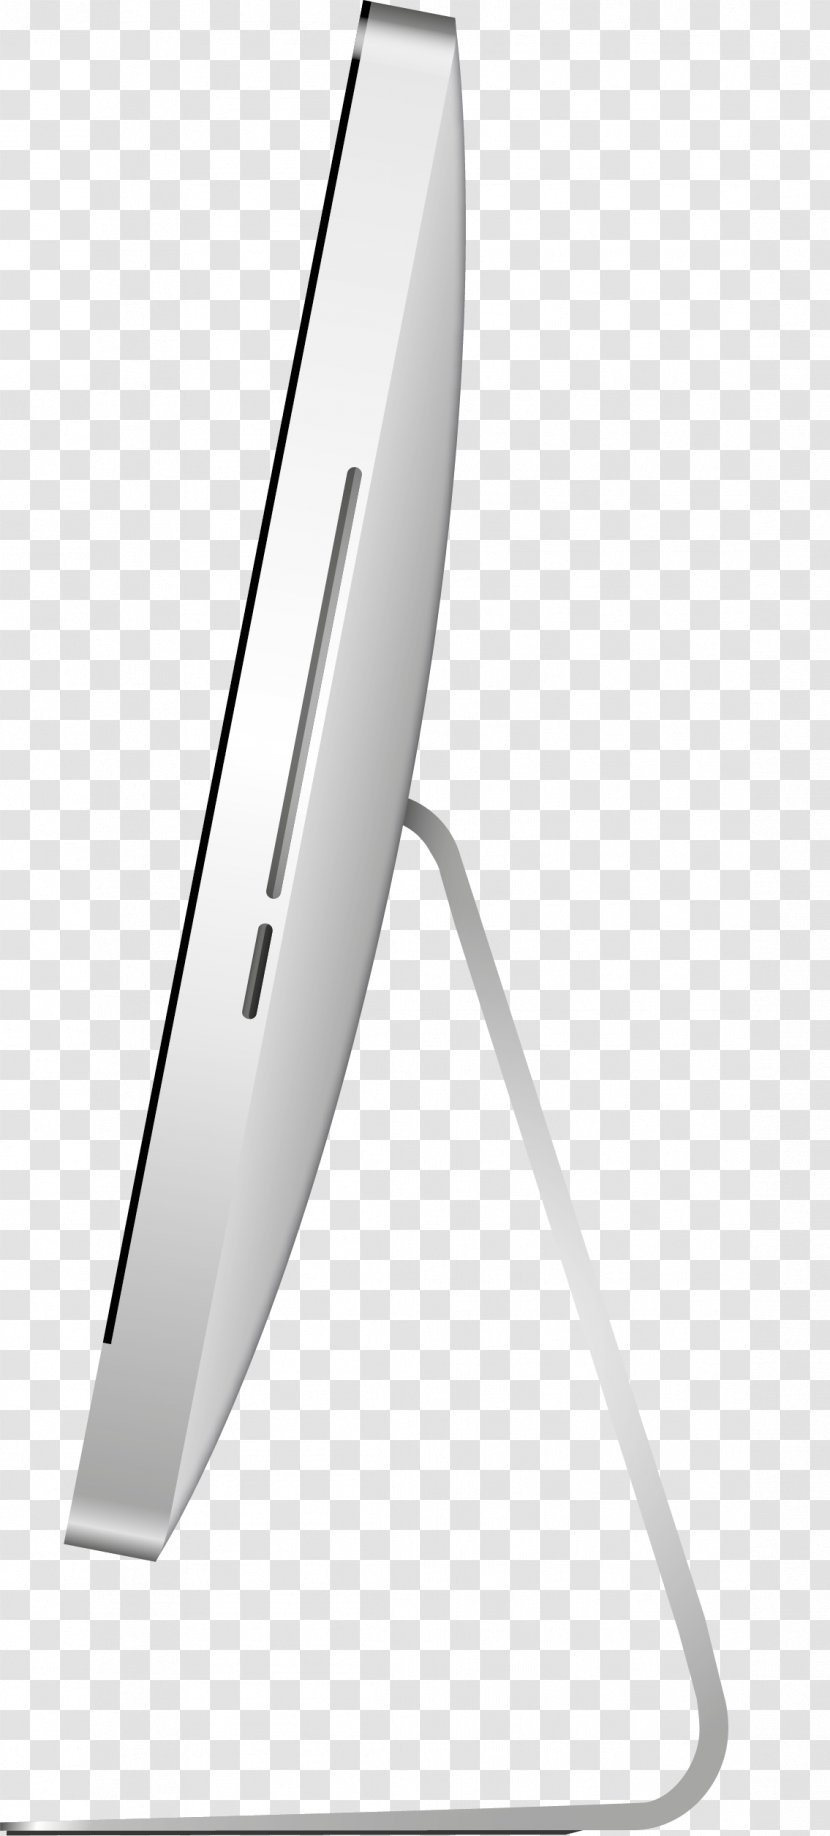 MacBook Pro Laptop Macintosh Apple IMac - Macbook - USB Interface Transparent PNG